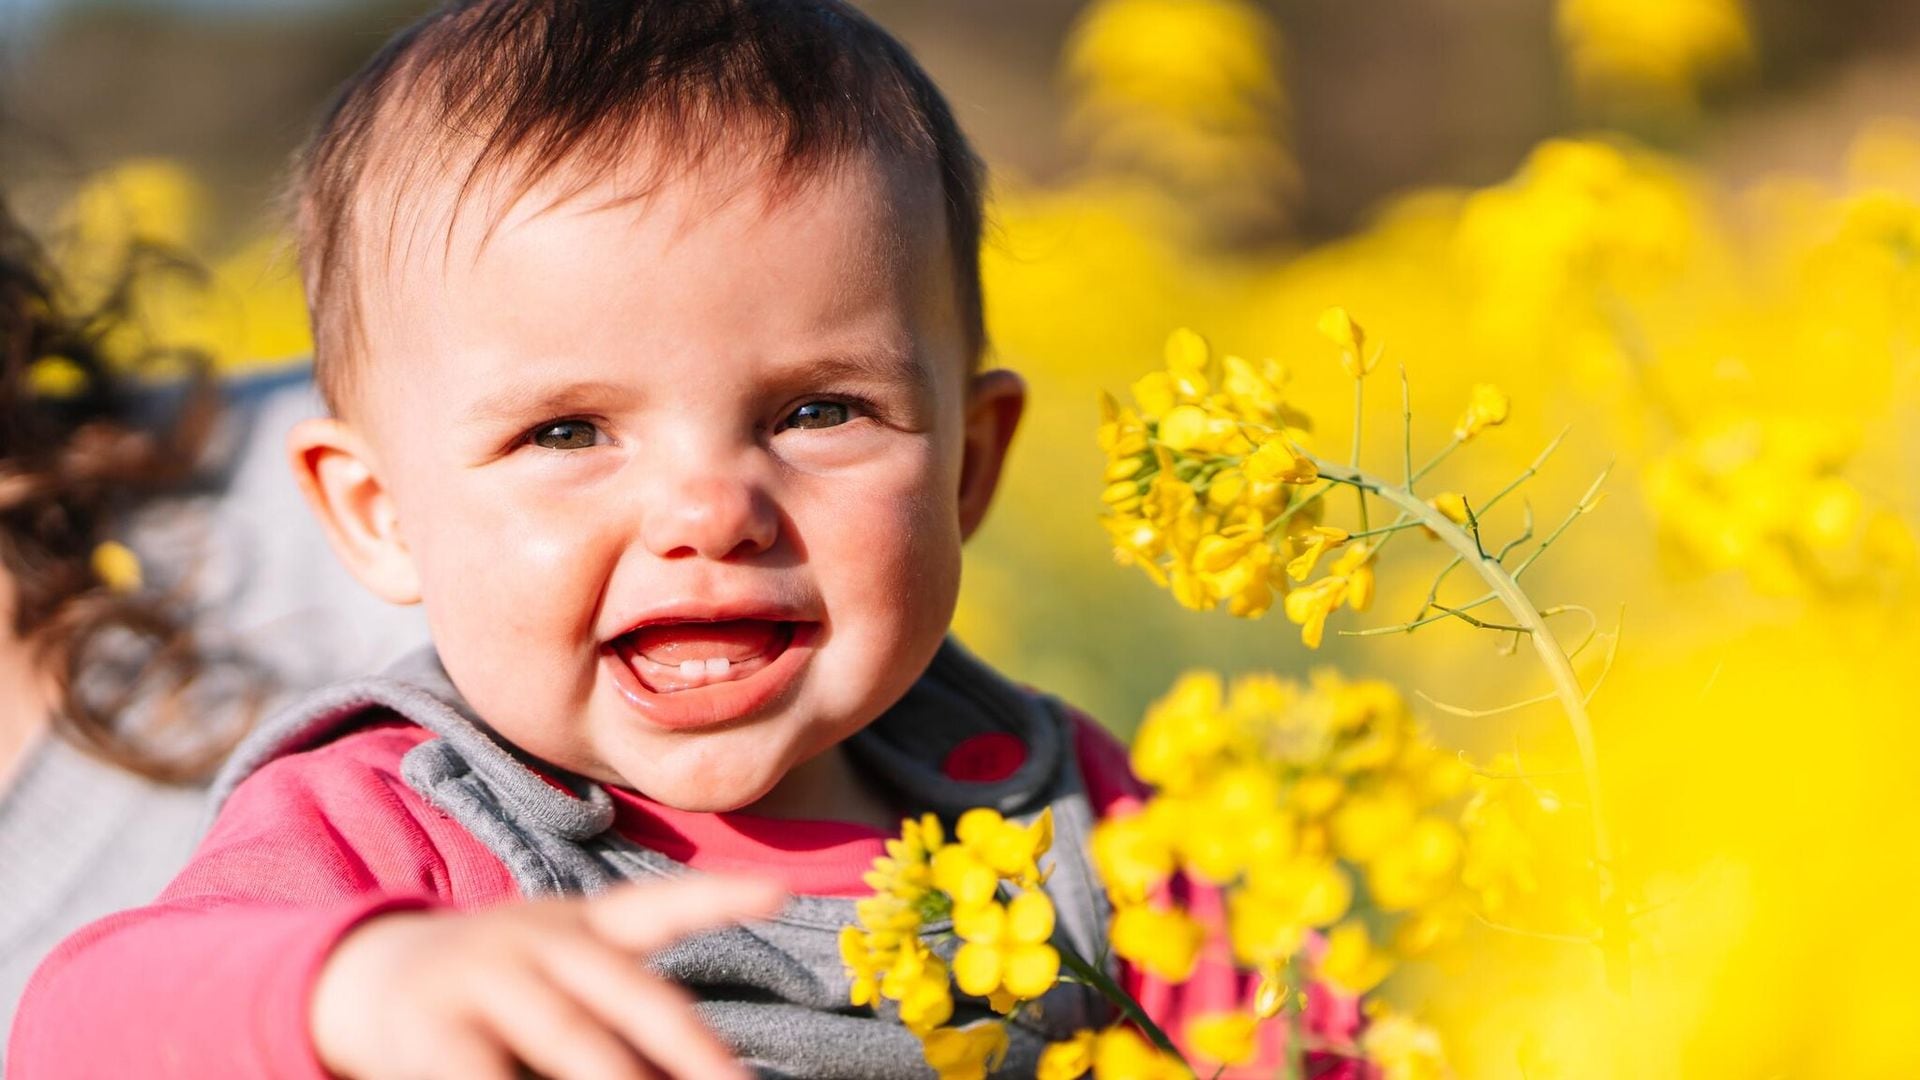 La dermatitis atópica aumenta en primavera en bebés y niños por esto